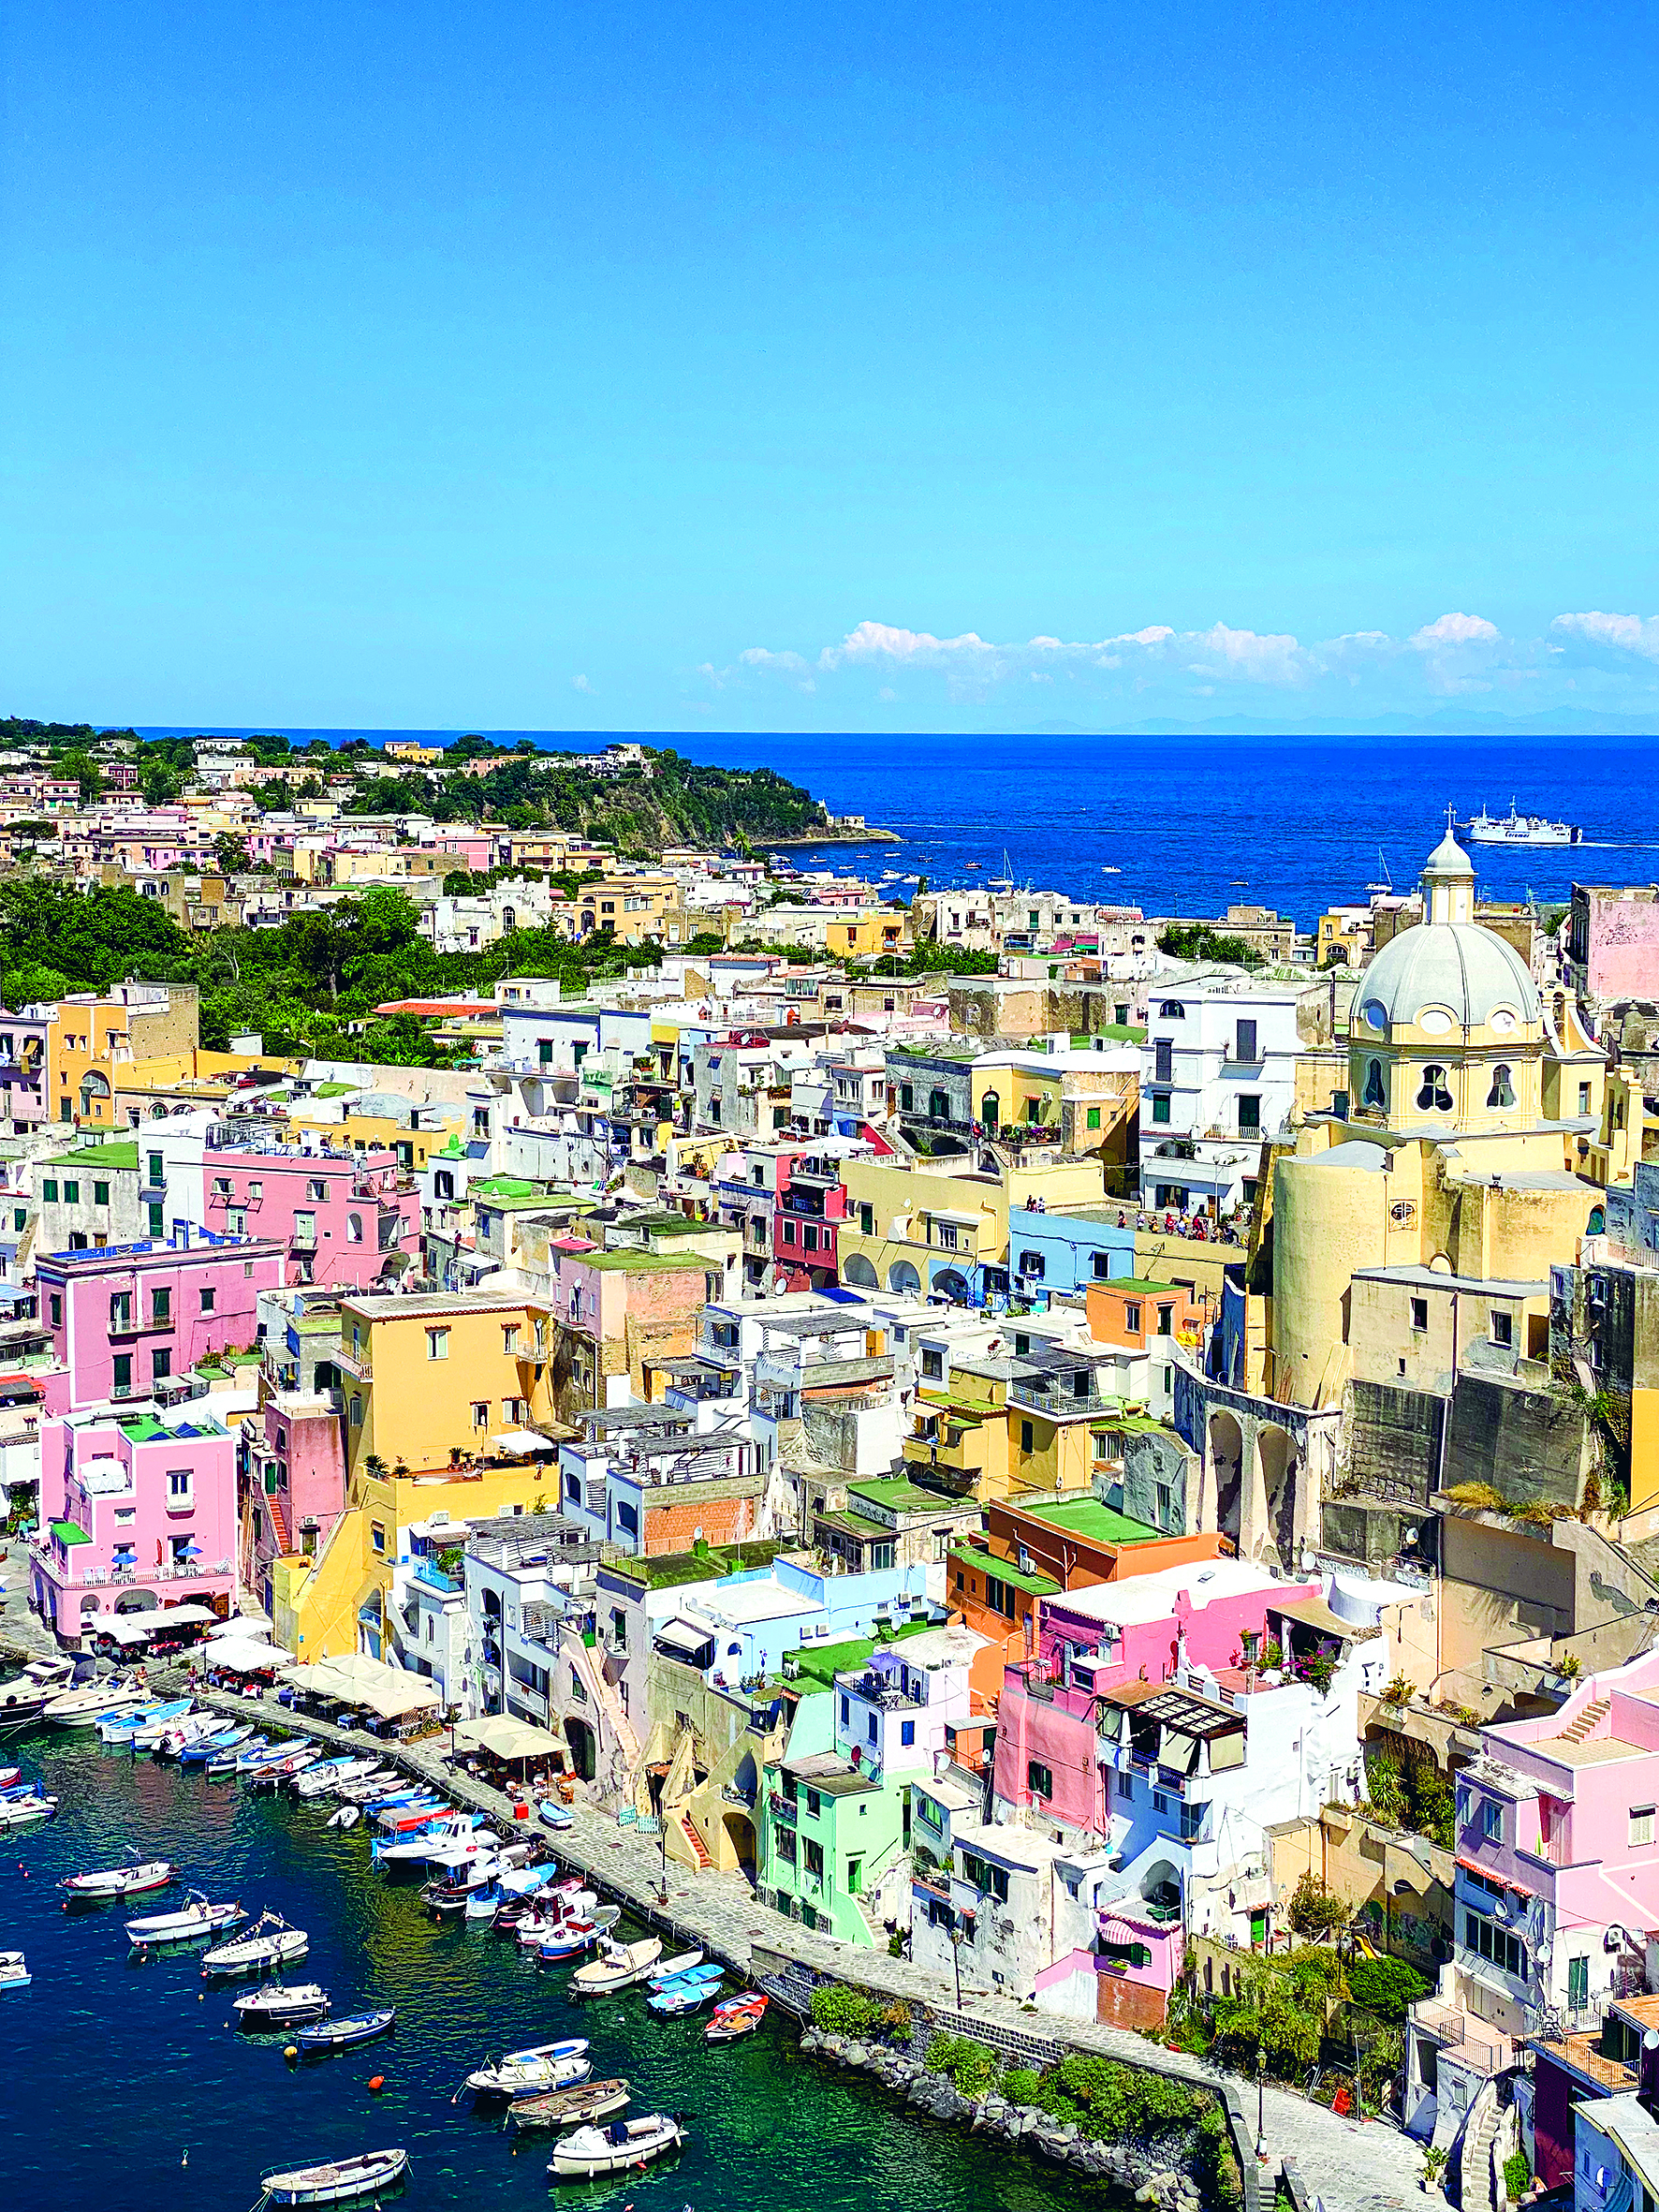 Foto dalla guida Lonely Planet dedicata alla Campania 